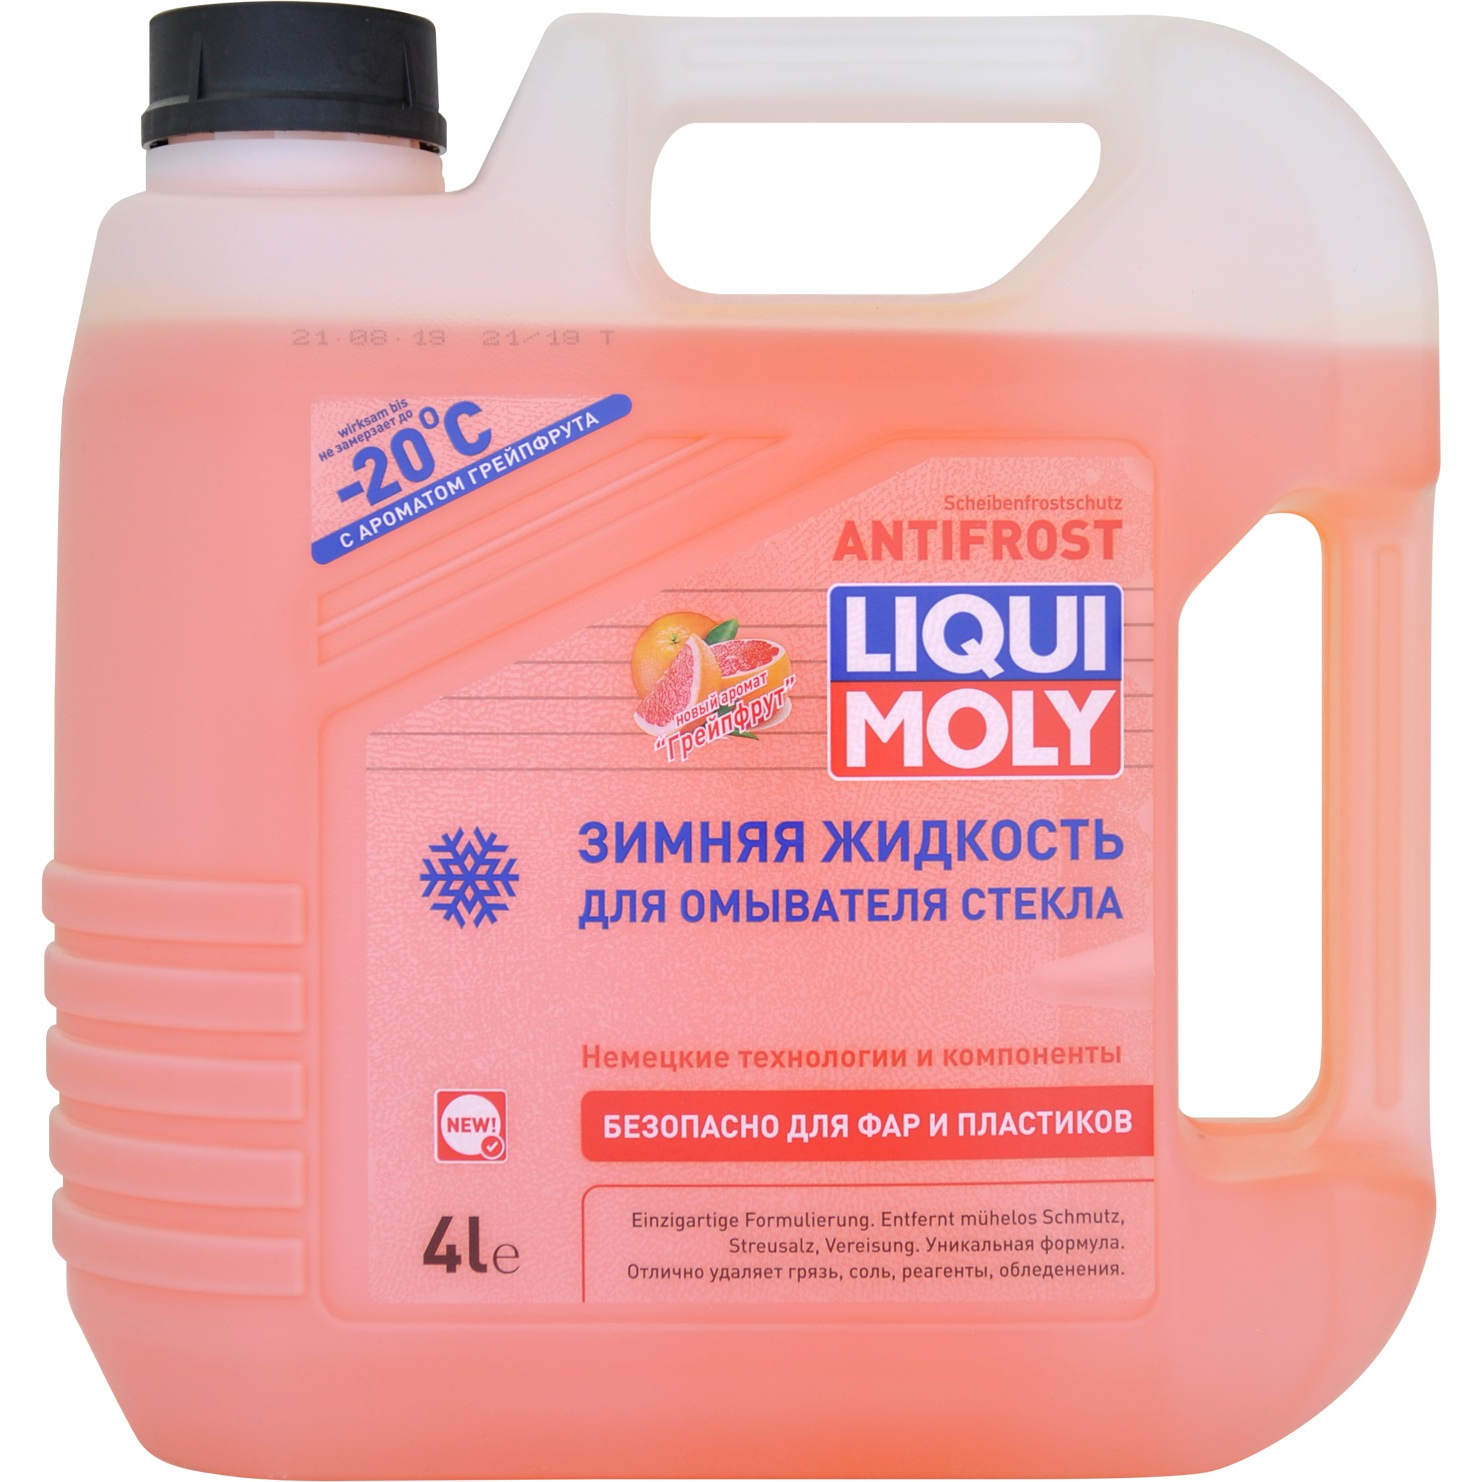 фото Стеклоомывающая жидкость liqui moly antifrost -20°с грейпфрут, 4л